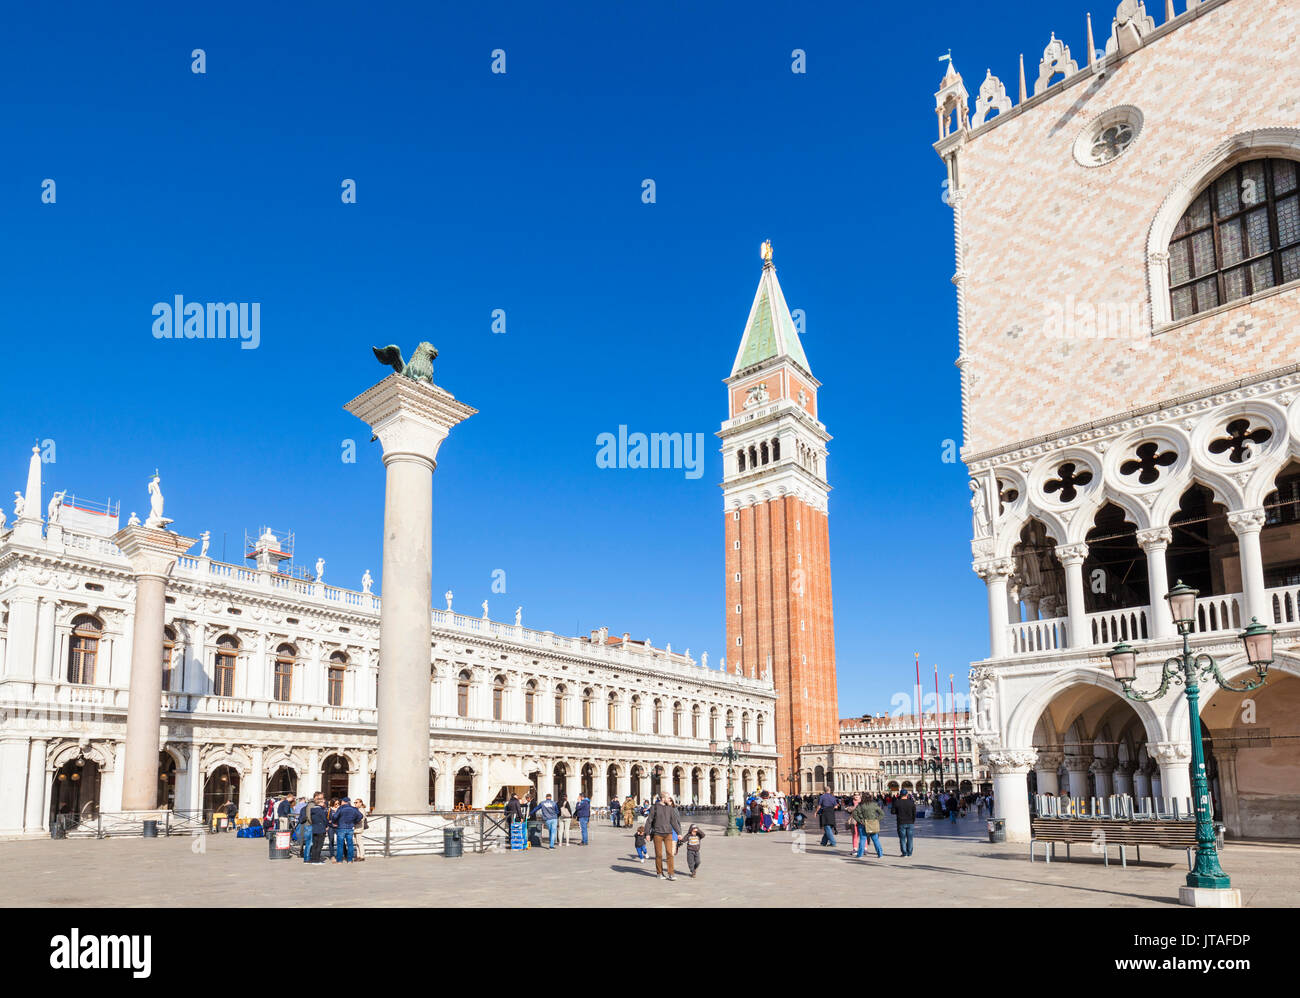 Le Campanile, Palazzo Ducale (Palais des Doges), la Piazzetta, la Place Saint Marc, Venise, UNESCO World Heritage Site, Vénétie, Italie, Europe Banque D'Images